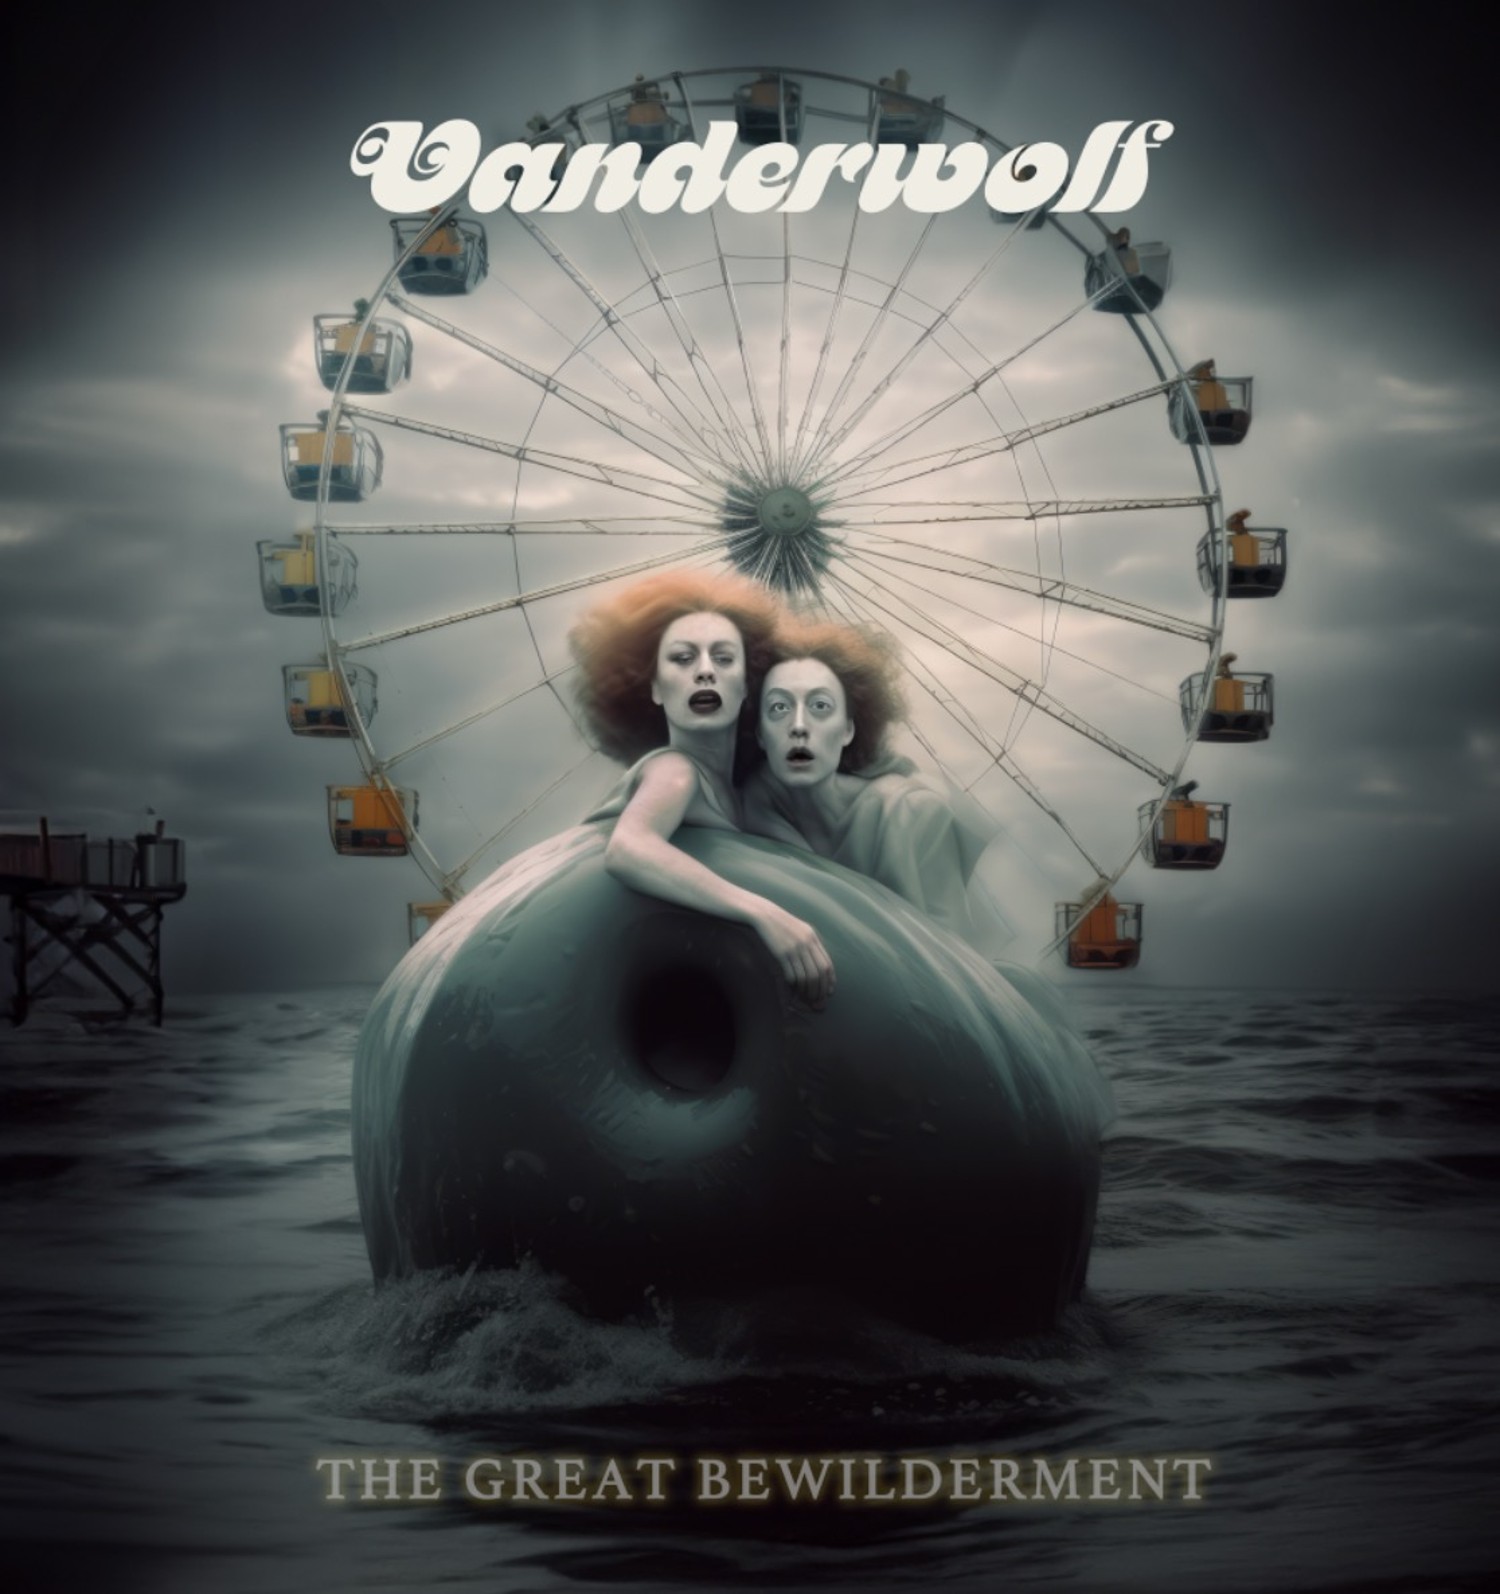 Vanderwolf ‘The Great Bewilderment’ album artwork